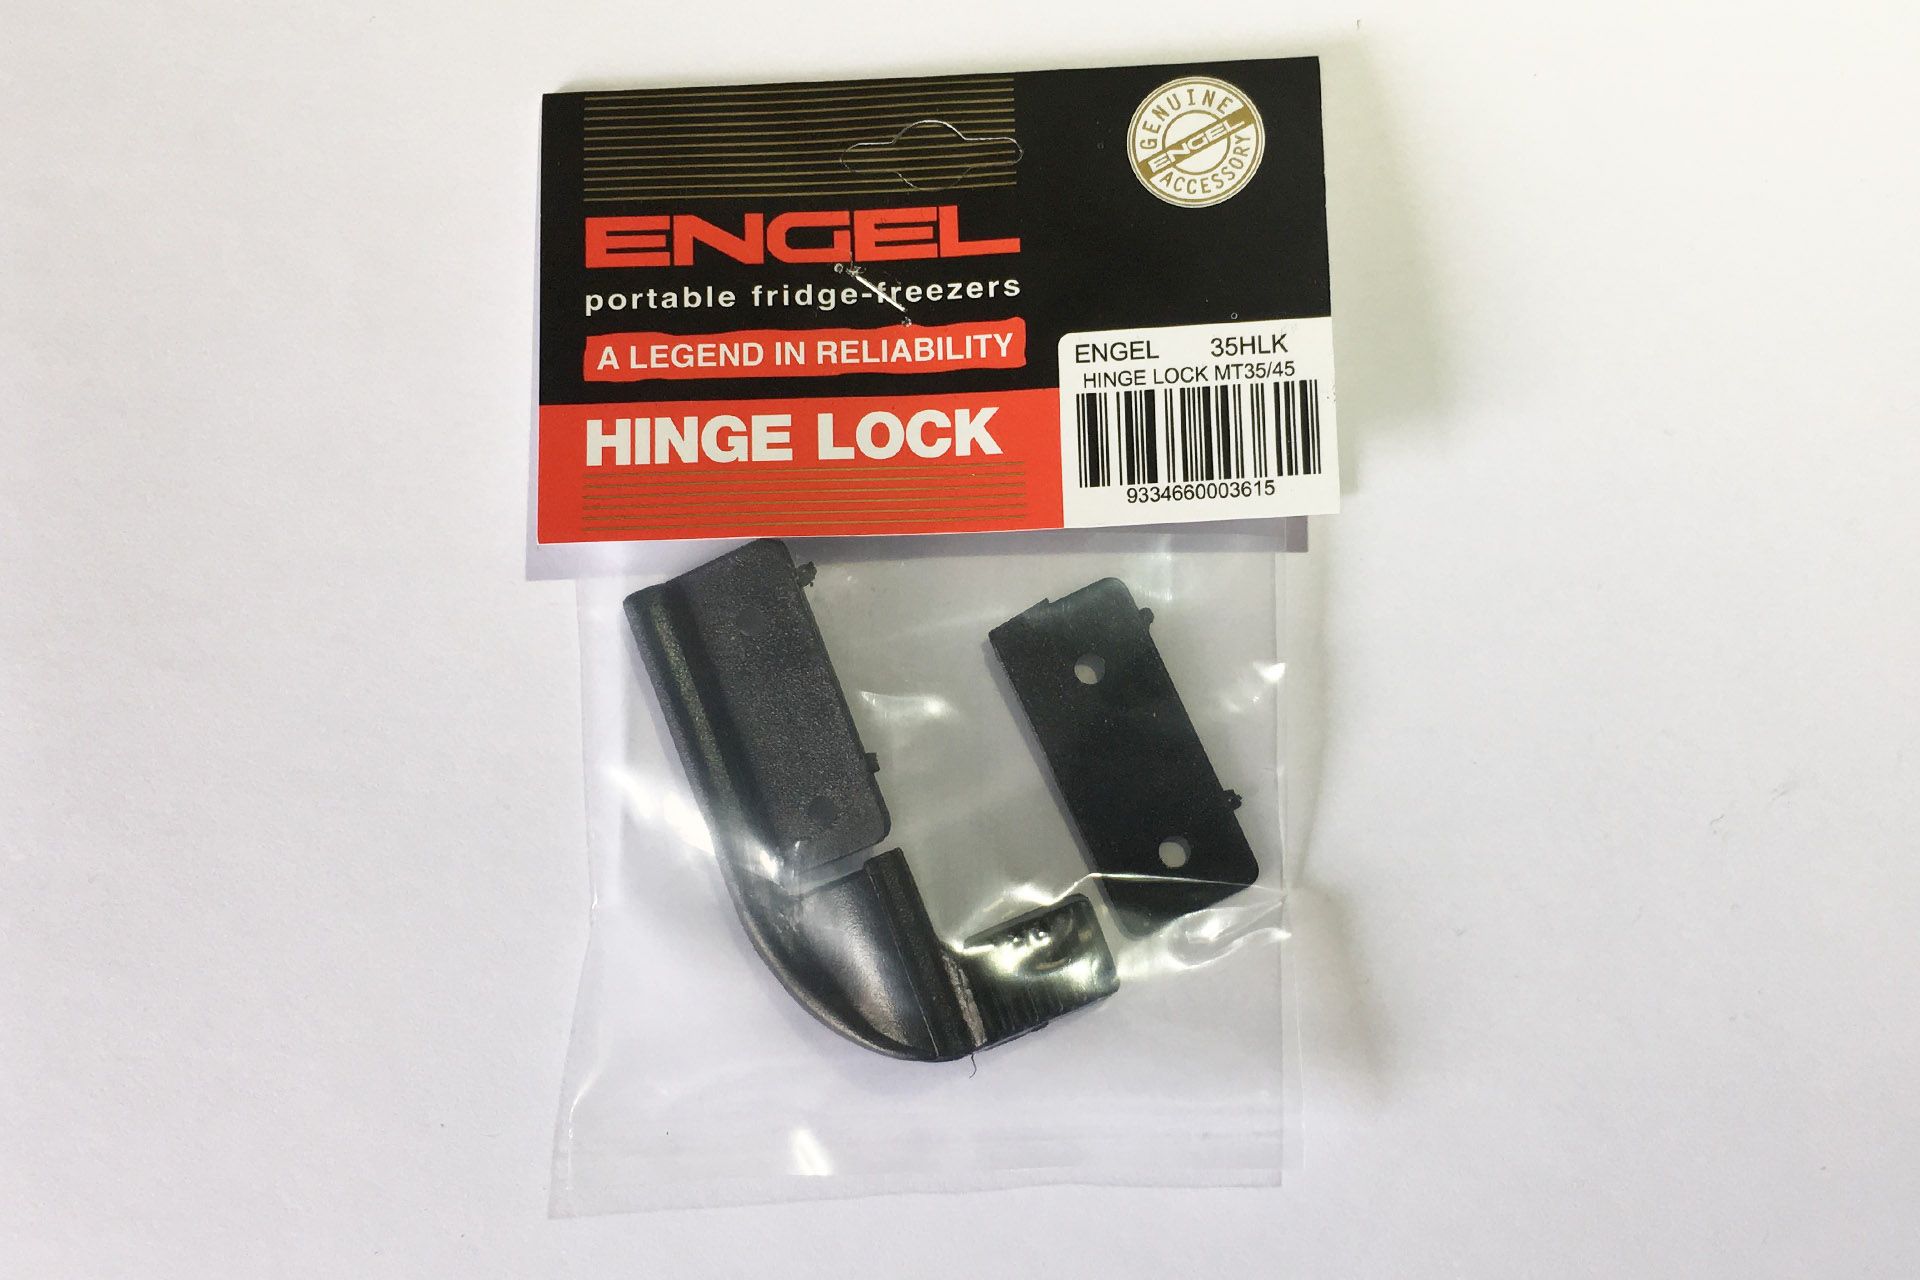 ENGEL Scharniersicherung "Hinge Lock" für Kühlbox MT35/45